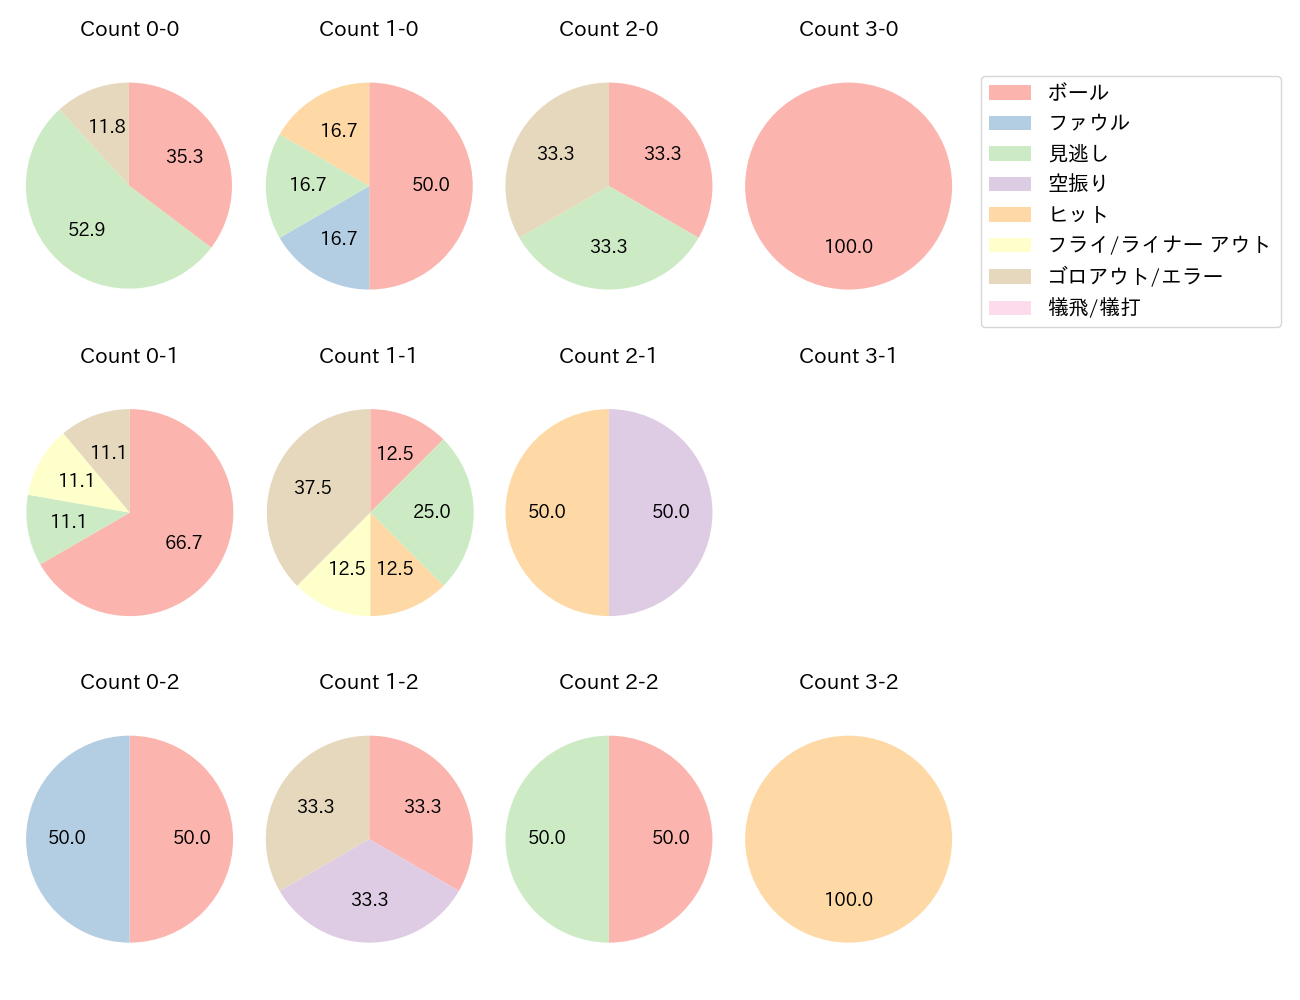 松山 竜平の球数分布(2021年7月)